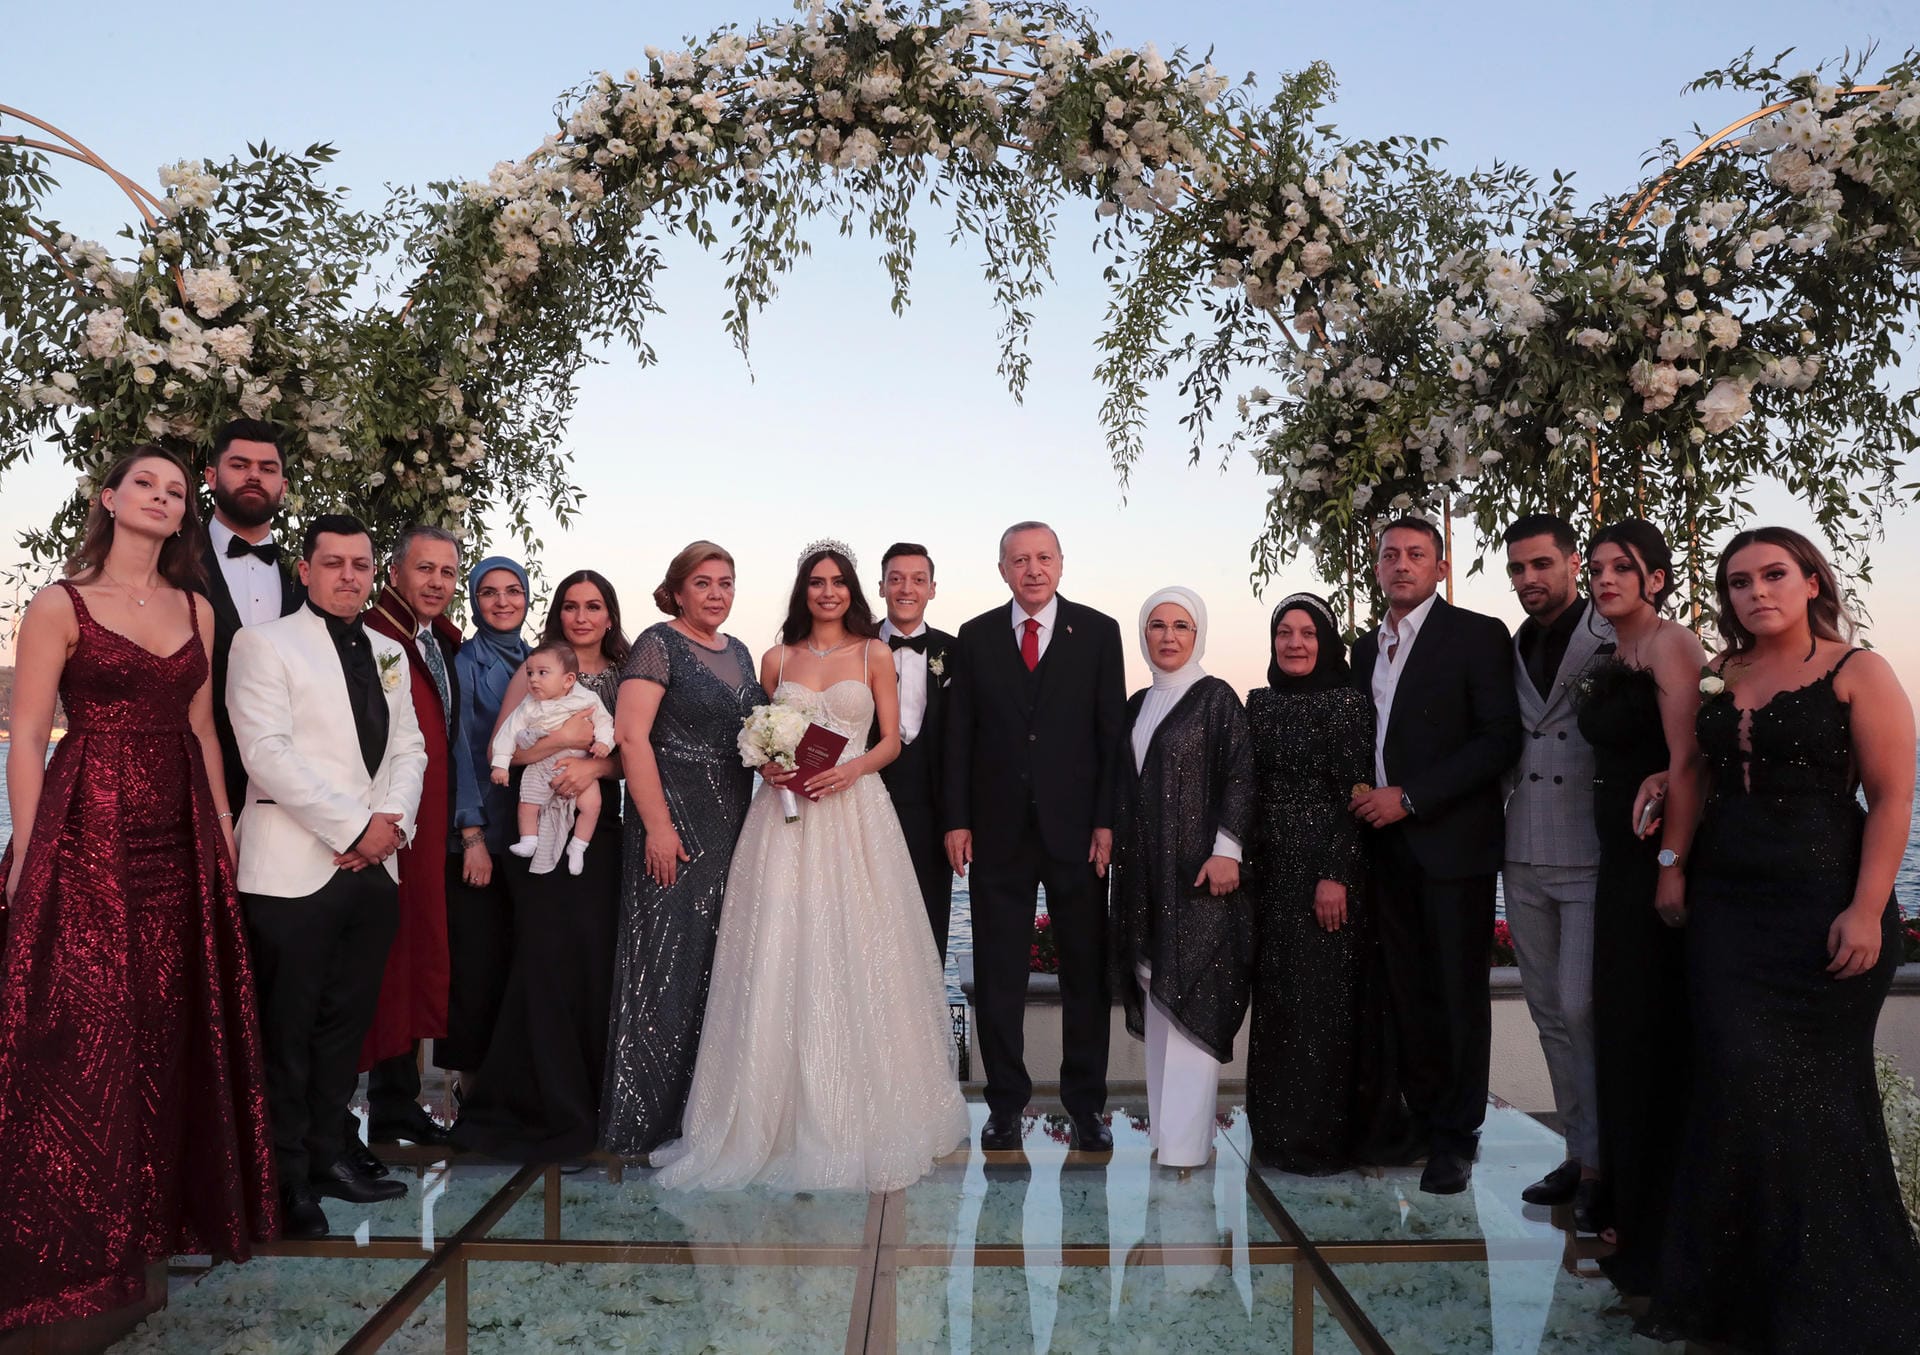 Recep Tayyip Erdogan (7.v.r), Präsident der Türkei, steht mit seiner Ehefrau Emine Erdogan (6.v.r) auf der Hochzeit von Fußballer Mesut Özil (8.v.r) und seiner Ehefrau, der Schauspielerin Amine Gülse (10.v.r), zusammen mit deren Familien für ein Hochzeitsfoto bereit.